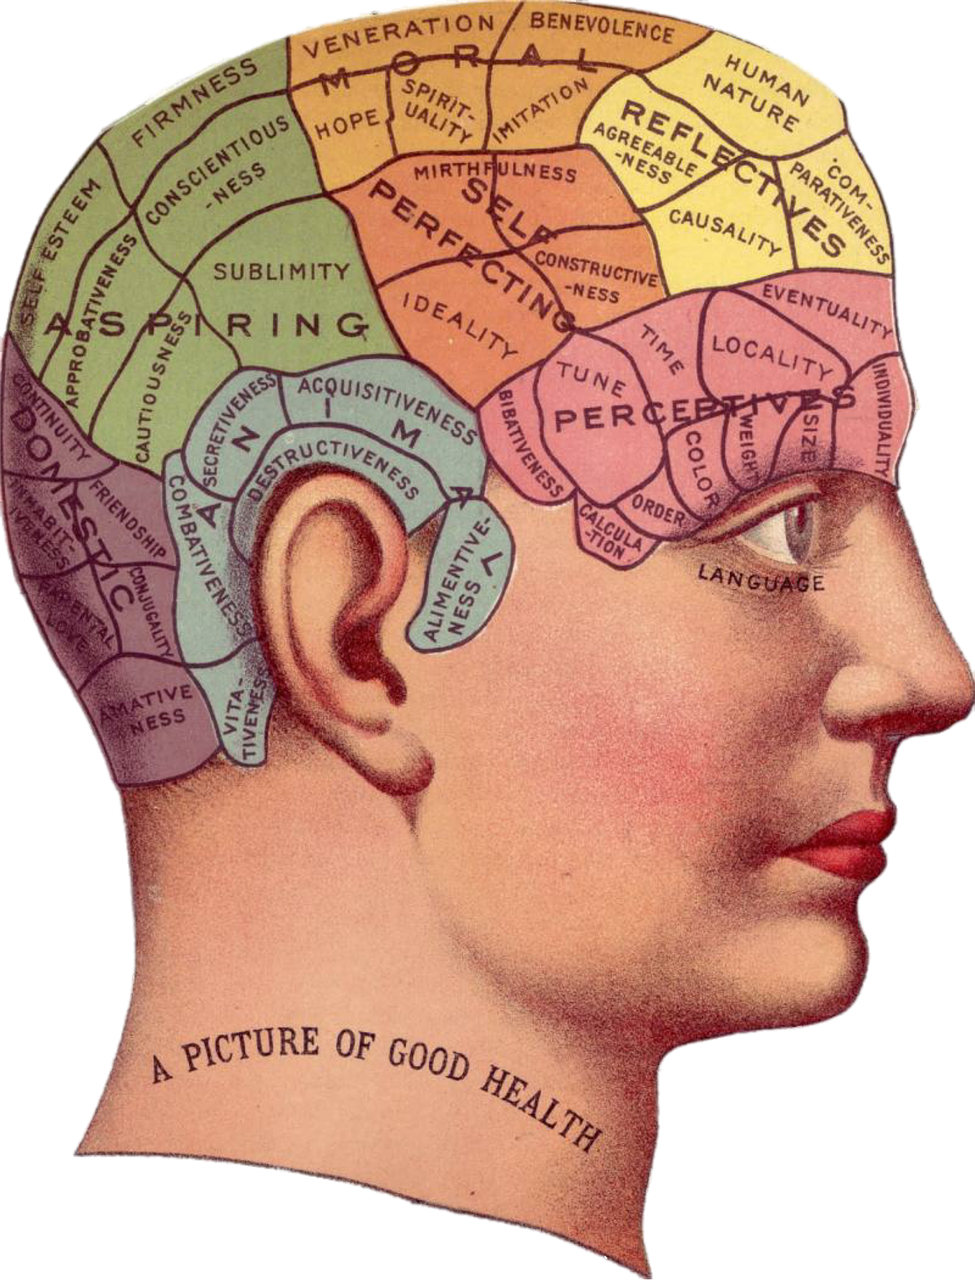 Vintage, Smegenys, Skelbimas, Idėja, Atmintis, Psichologija, Protas, Žmogus, Galvoti, Išradimas